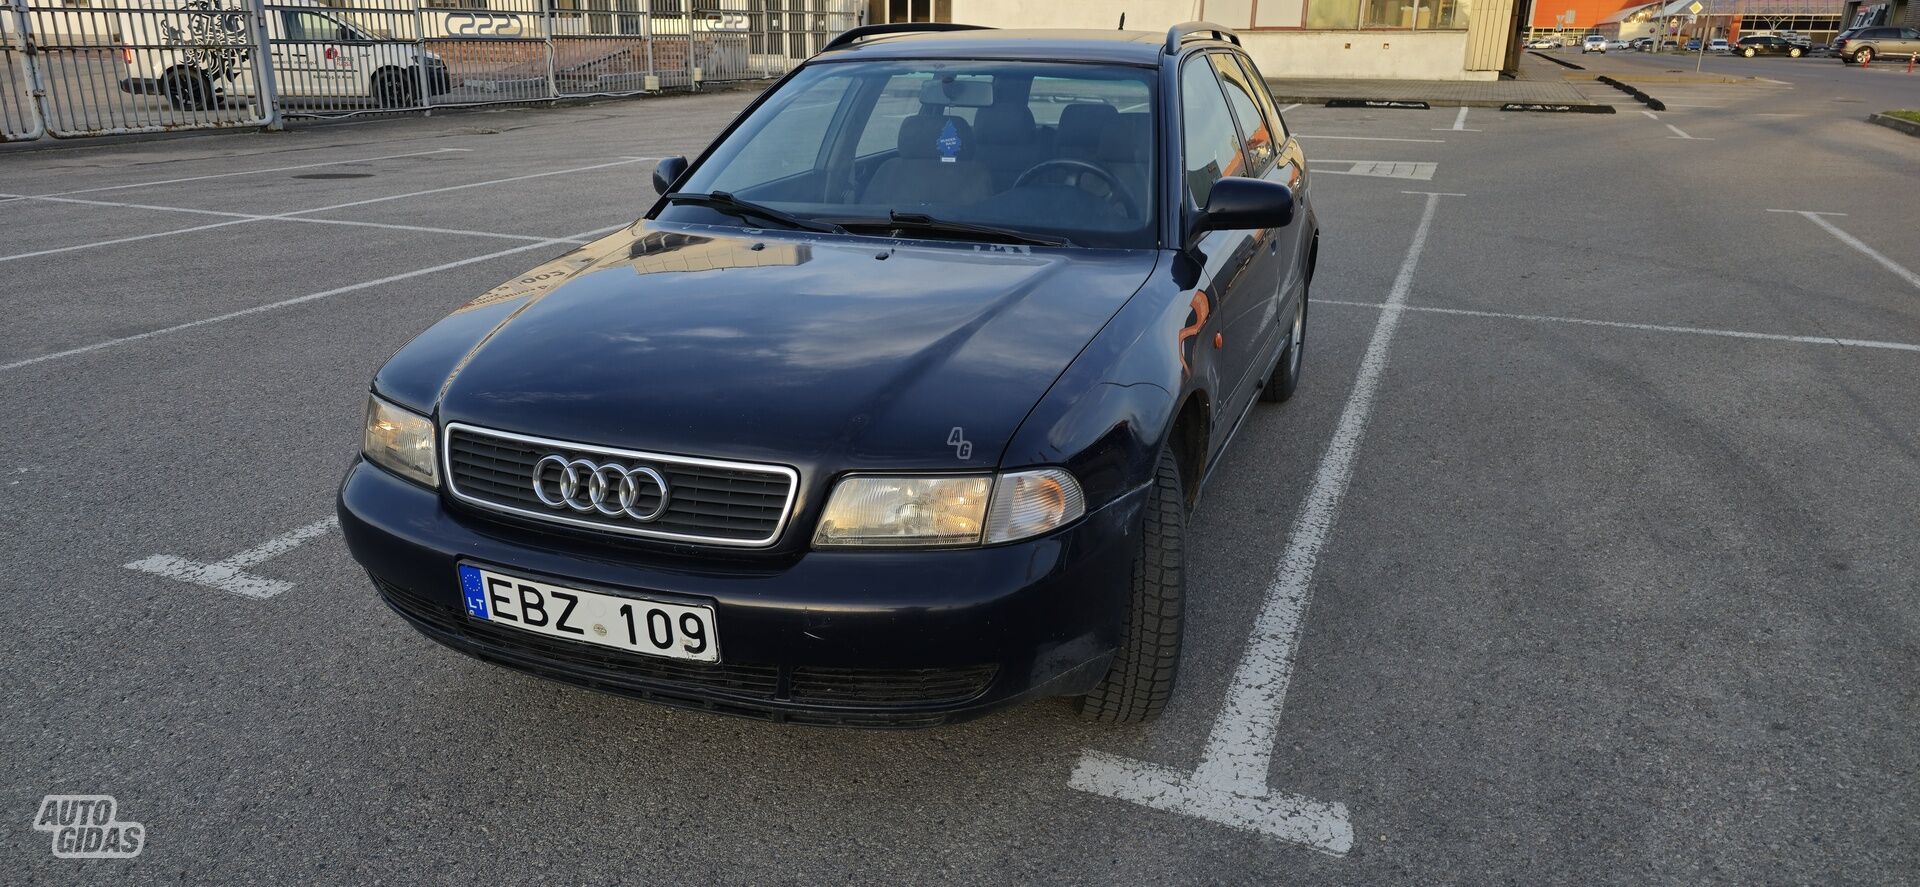 Audi A4 1998 y Wagon